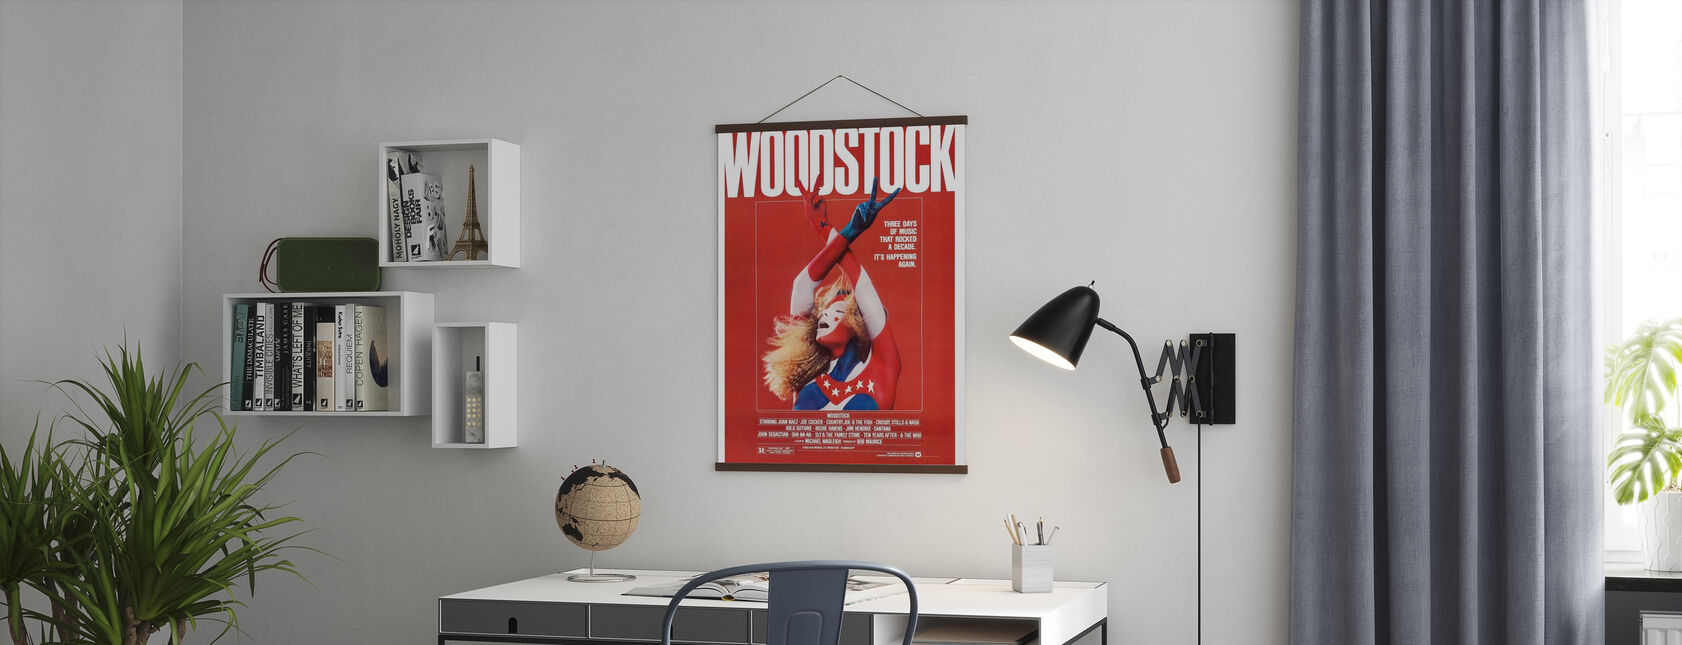 Woodstock Poster Art - Poster - Kantoor